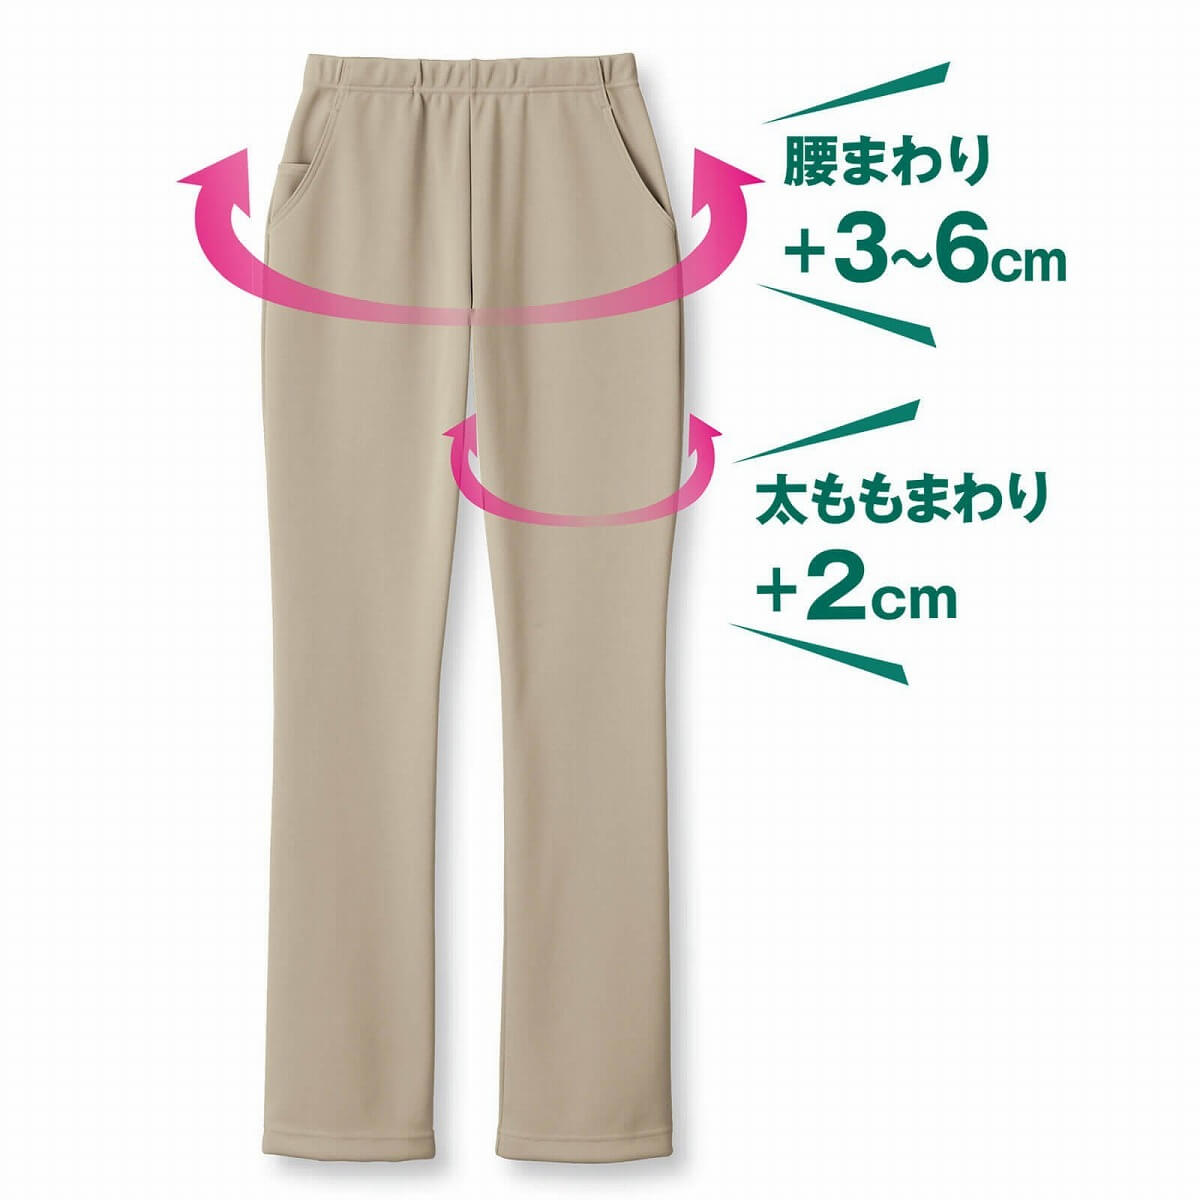 日本製携帯ポケット付き美脚パンツ ももゆったりタイプ[医療 ナース 看護 介護 白衣 ウエア 女性 ナースウェア パンツ 保育士] アンファミエ